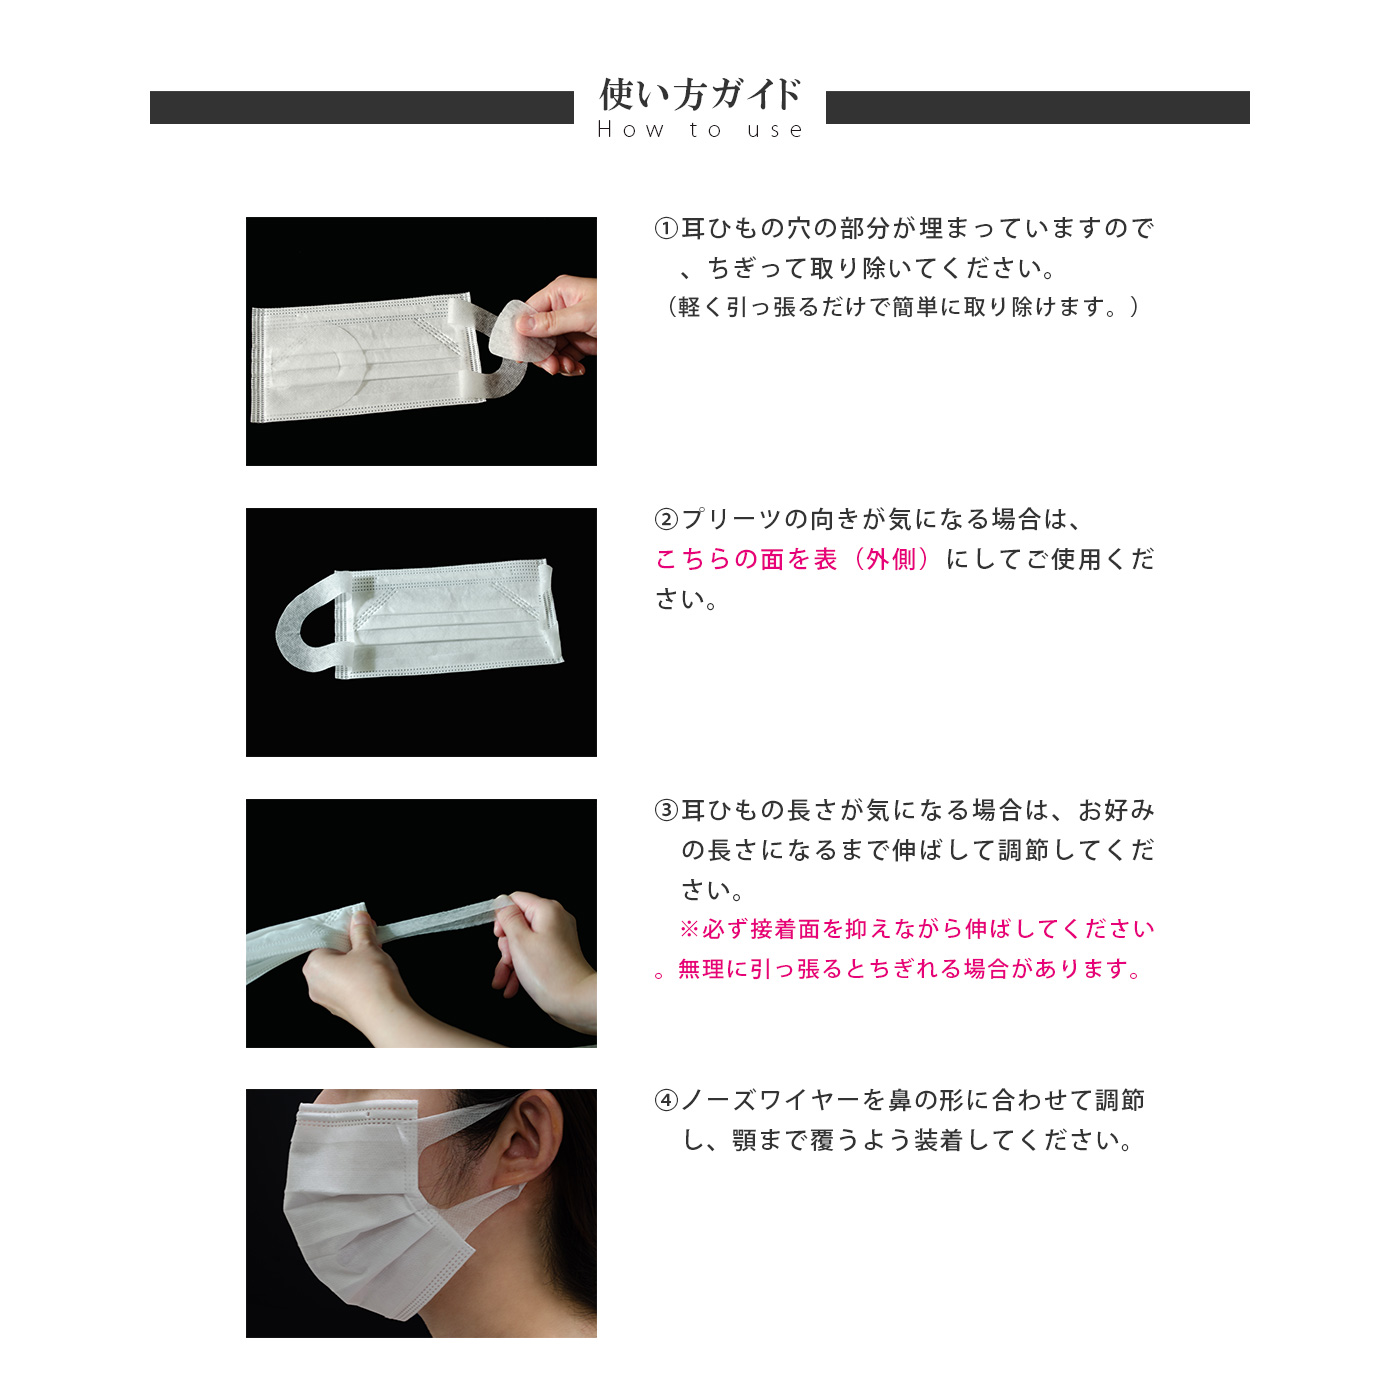 楽天市場 3箱以上で送料無料 日本国内発送 耳が痛くなりにくい 大人男女兼用3層高密度マスク 使い捨てマスク 不織布 50枚入マスク 中国製 在庫あり からだデザインオンラインショップ